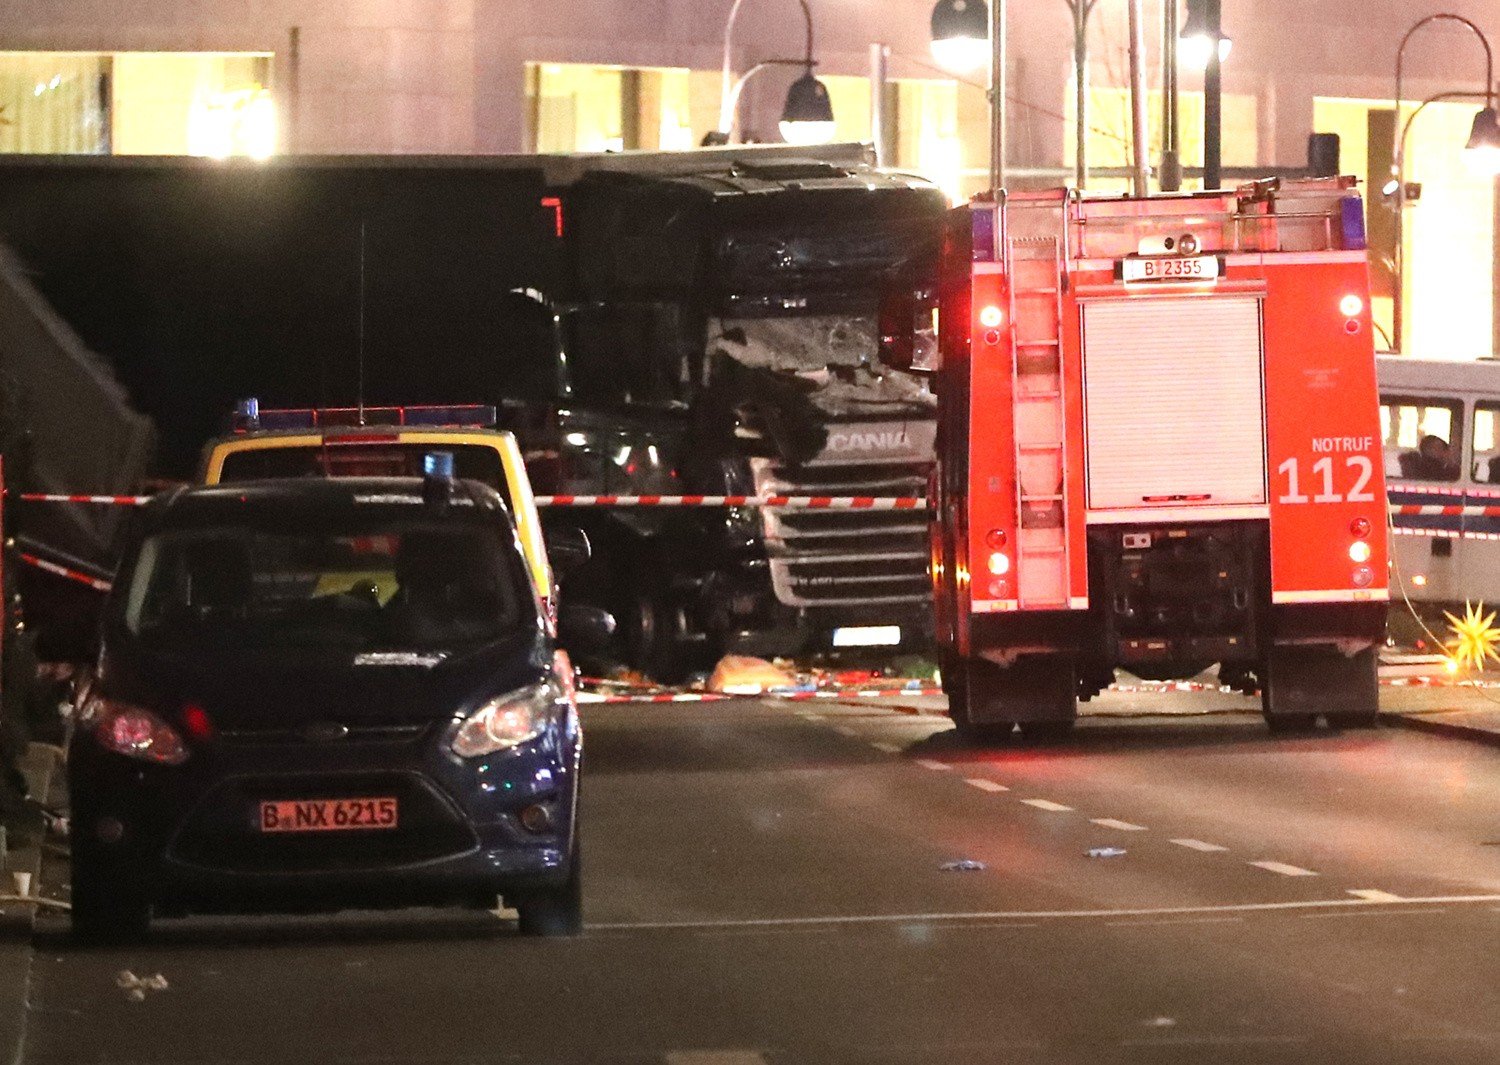 Zamach W Berlinie. Ciężarówka Wjechała W Tłum Ludzi. 12 Osób Nie Żyje, 48 Rannych [Zdjęcia, Wideo] | Dziennik Bałtycki